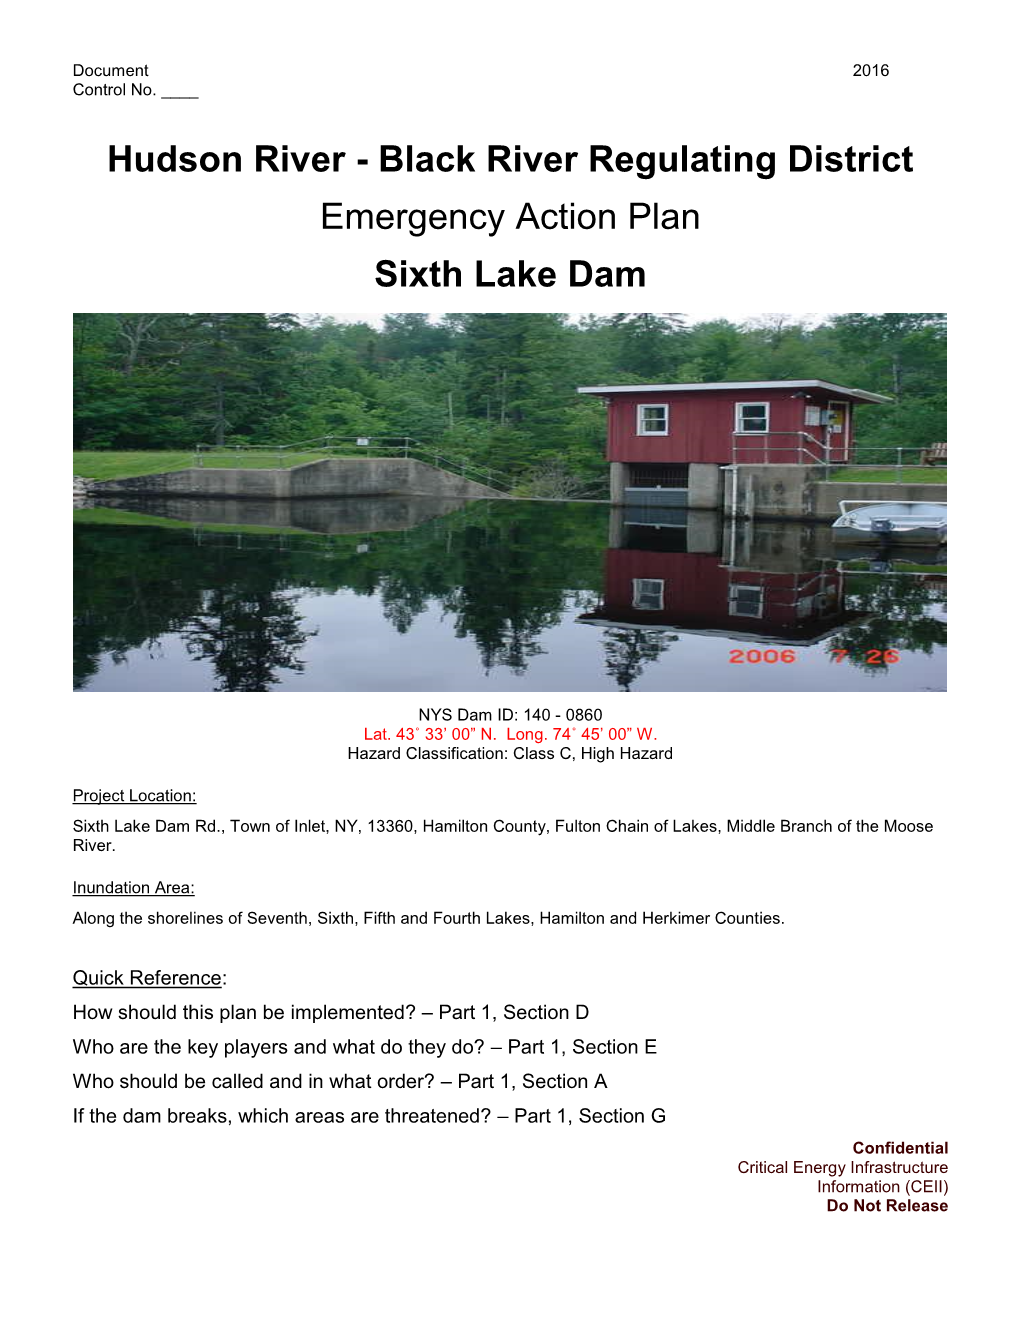 Hudson River - Black River Regulating District